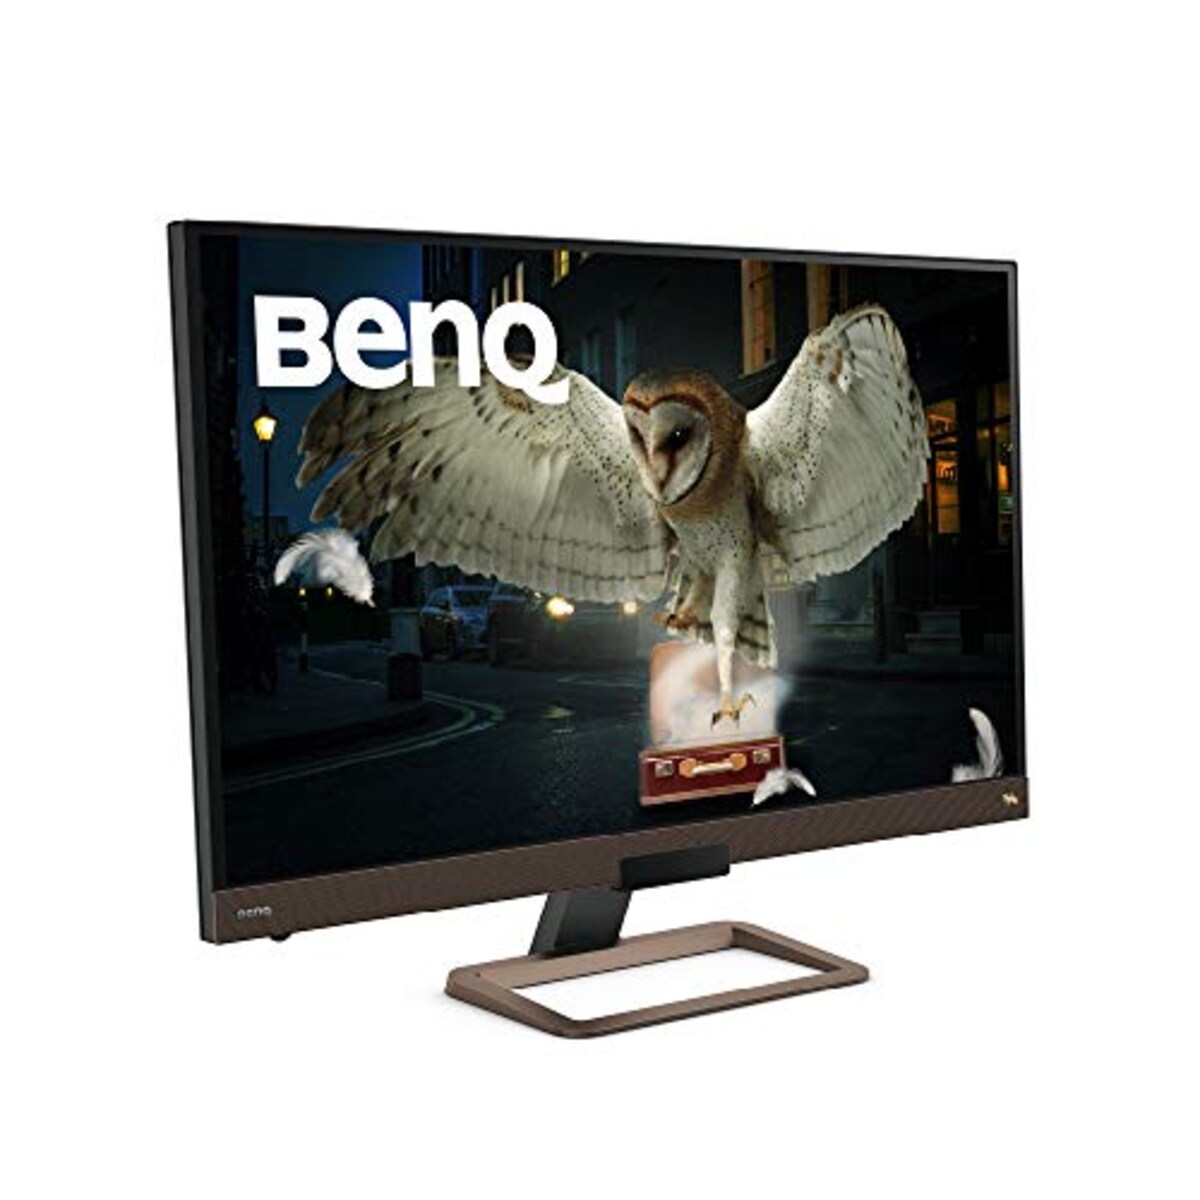  【リサイクル券付き】BenQ EW3280U モニター (32インチ/4K/IPS/DisplayHDR400/HDRi/2.1chスピーカー/リモコン/HDMI/DP/USB-C/60W給電)画像2 